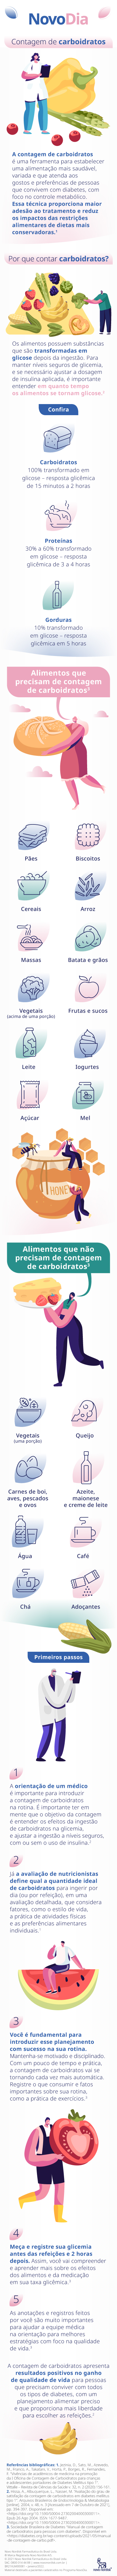 Infográfico sobre contagem de carboidratos, com ilustrações de um profissional da saúde e alguns alimentos.